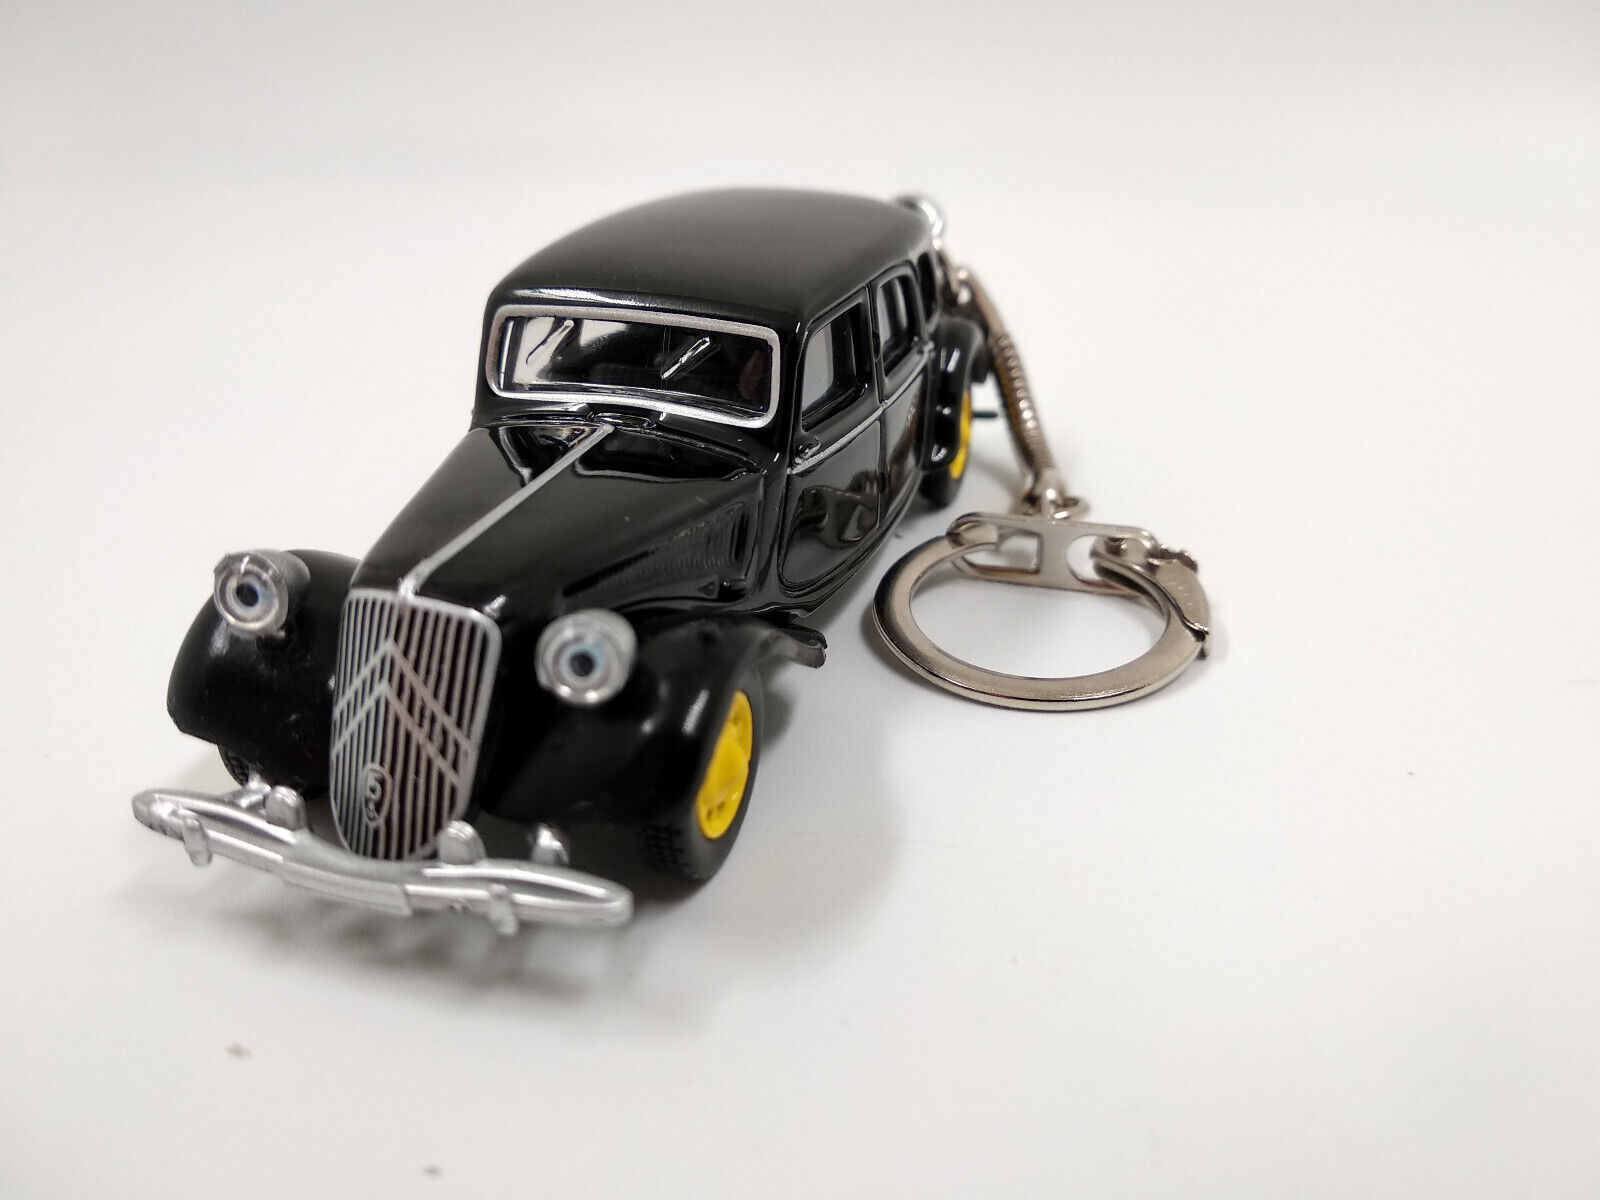 Porte clé Citroën Traction 1939 noir en métal idée cadeau sympa